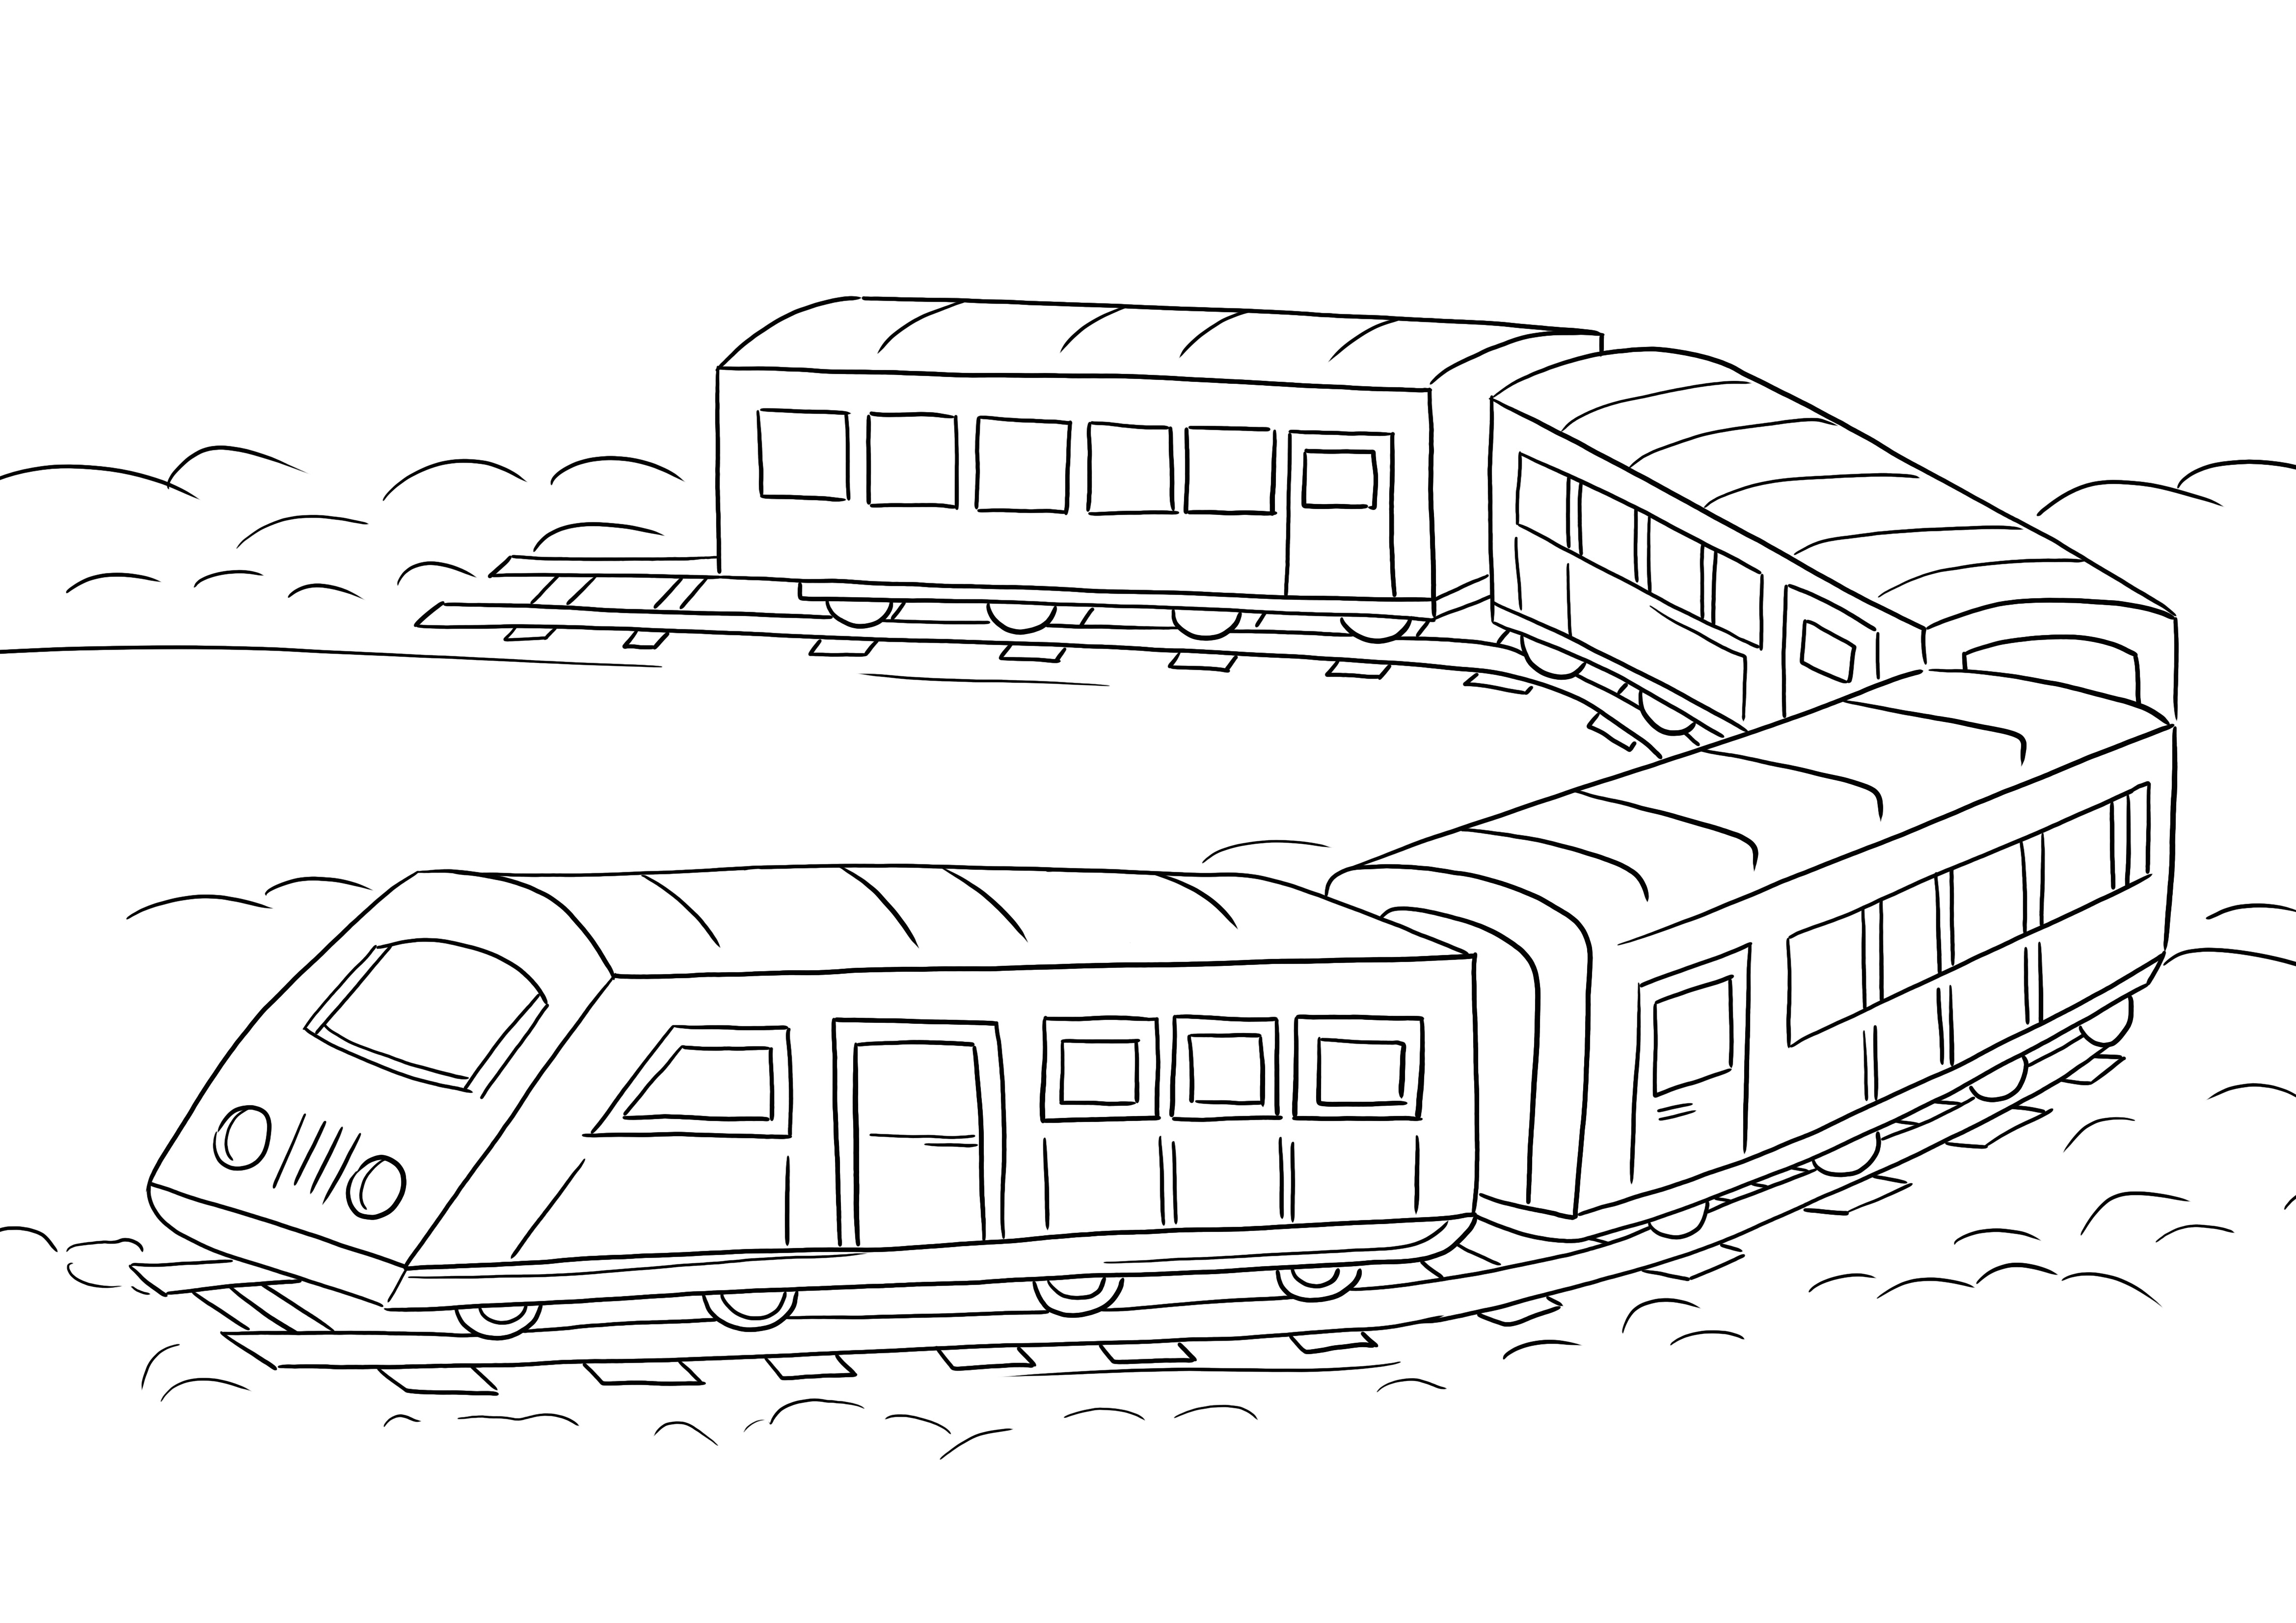 Vagoane de tren ușor de colorat de imprimat sau descărcat gratuit